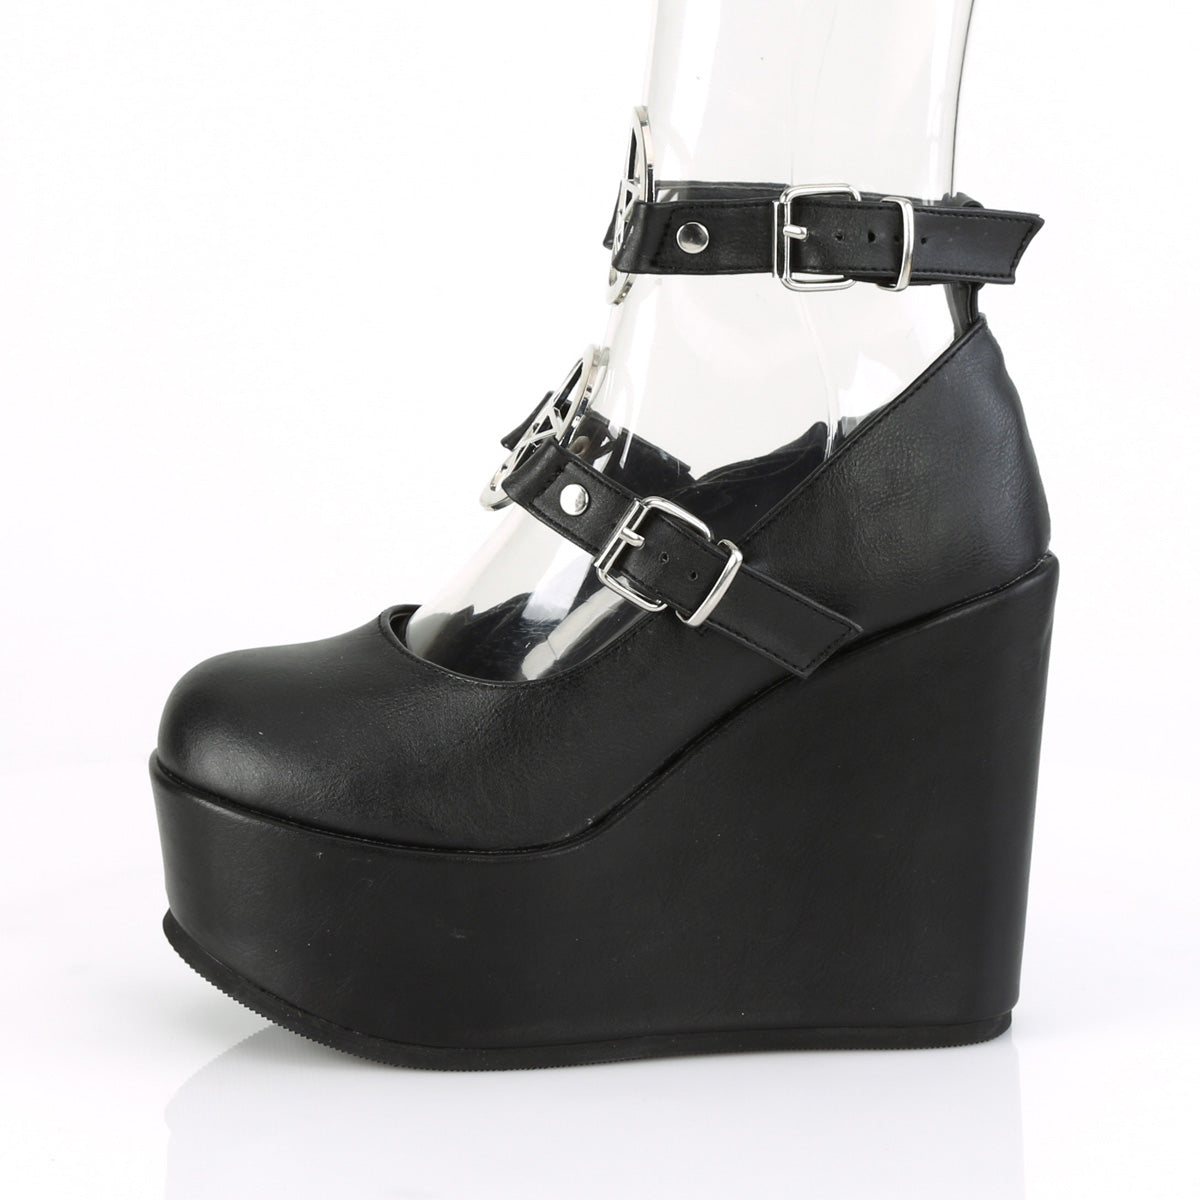 POISON-99-1 Demoniacult Alternative Footwear Women's Platforms